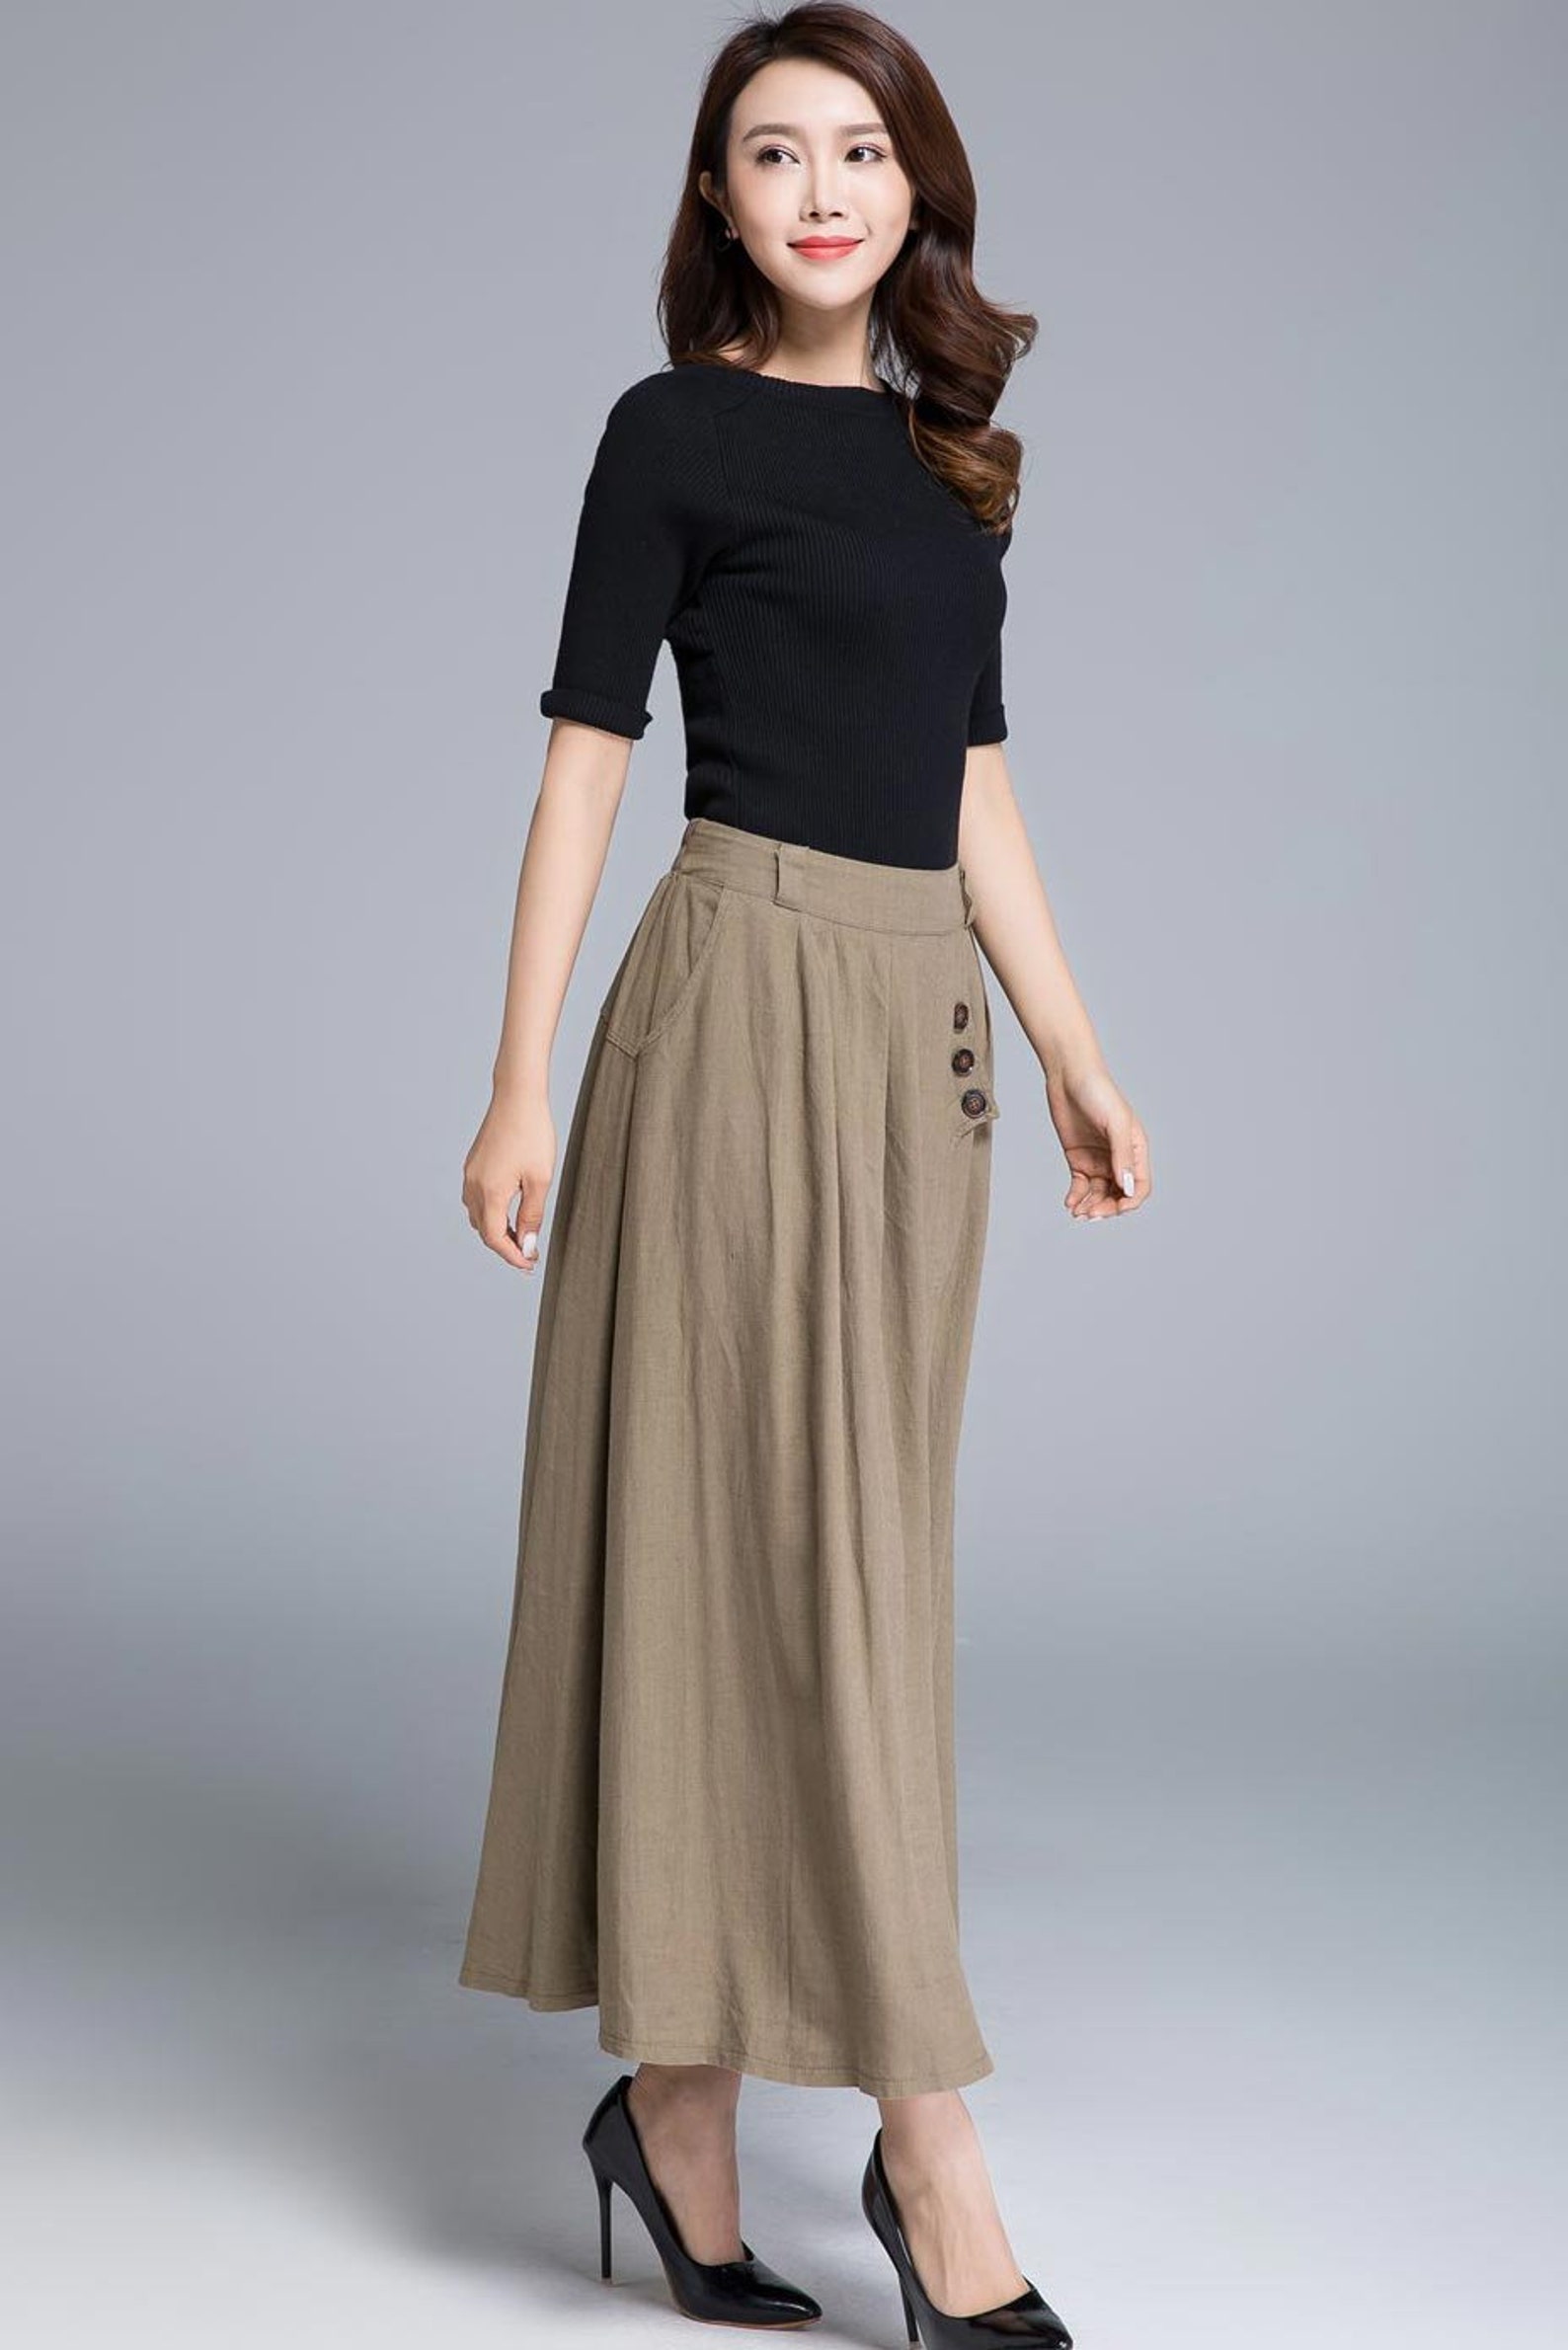 Khaki skirt linen skirt pleated skirt pocket skirt button | Etsy